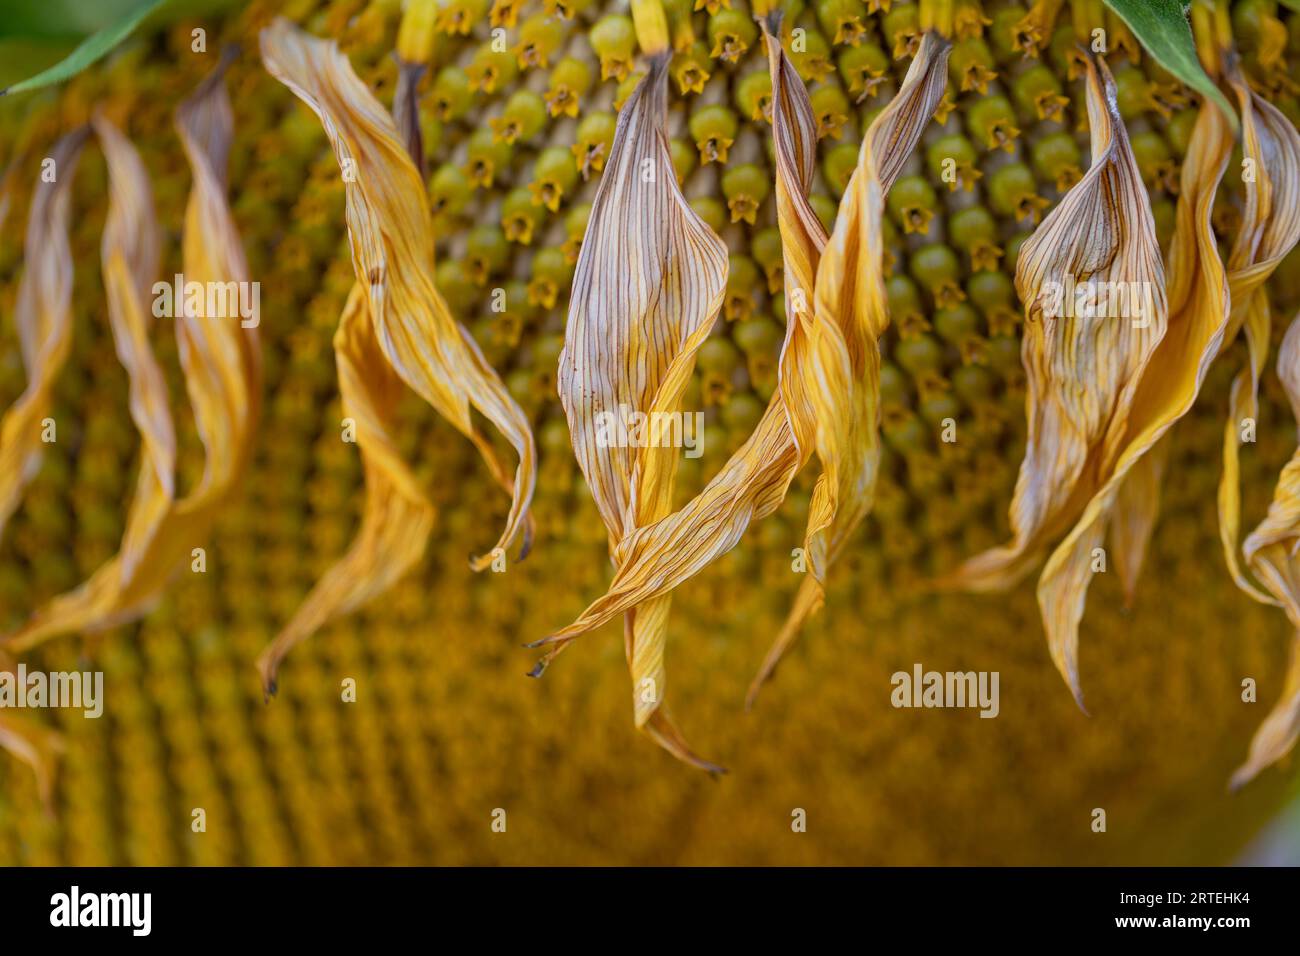 Le tournesol (Helianthus annuus) s'est fané à la fin de son cycle de vie ; Port Alberni, Colombie-Britannique, Canada Banque D'Images